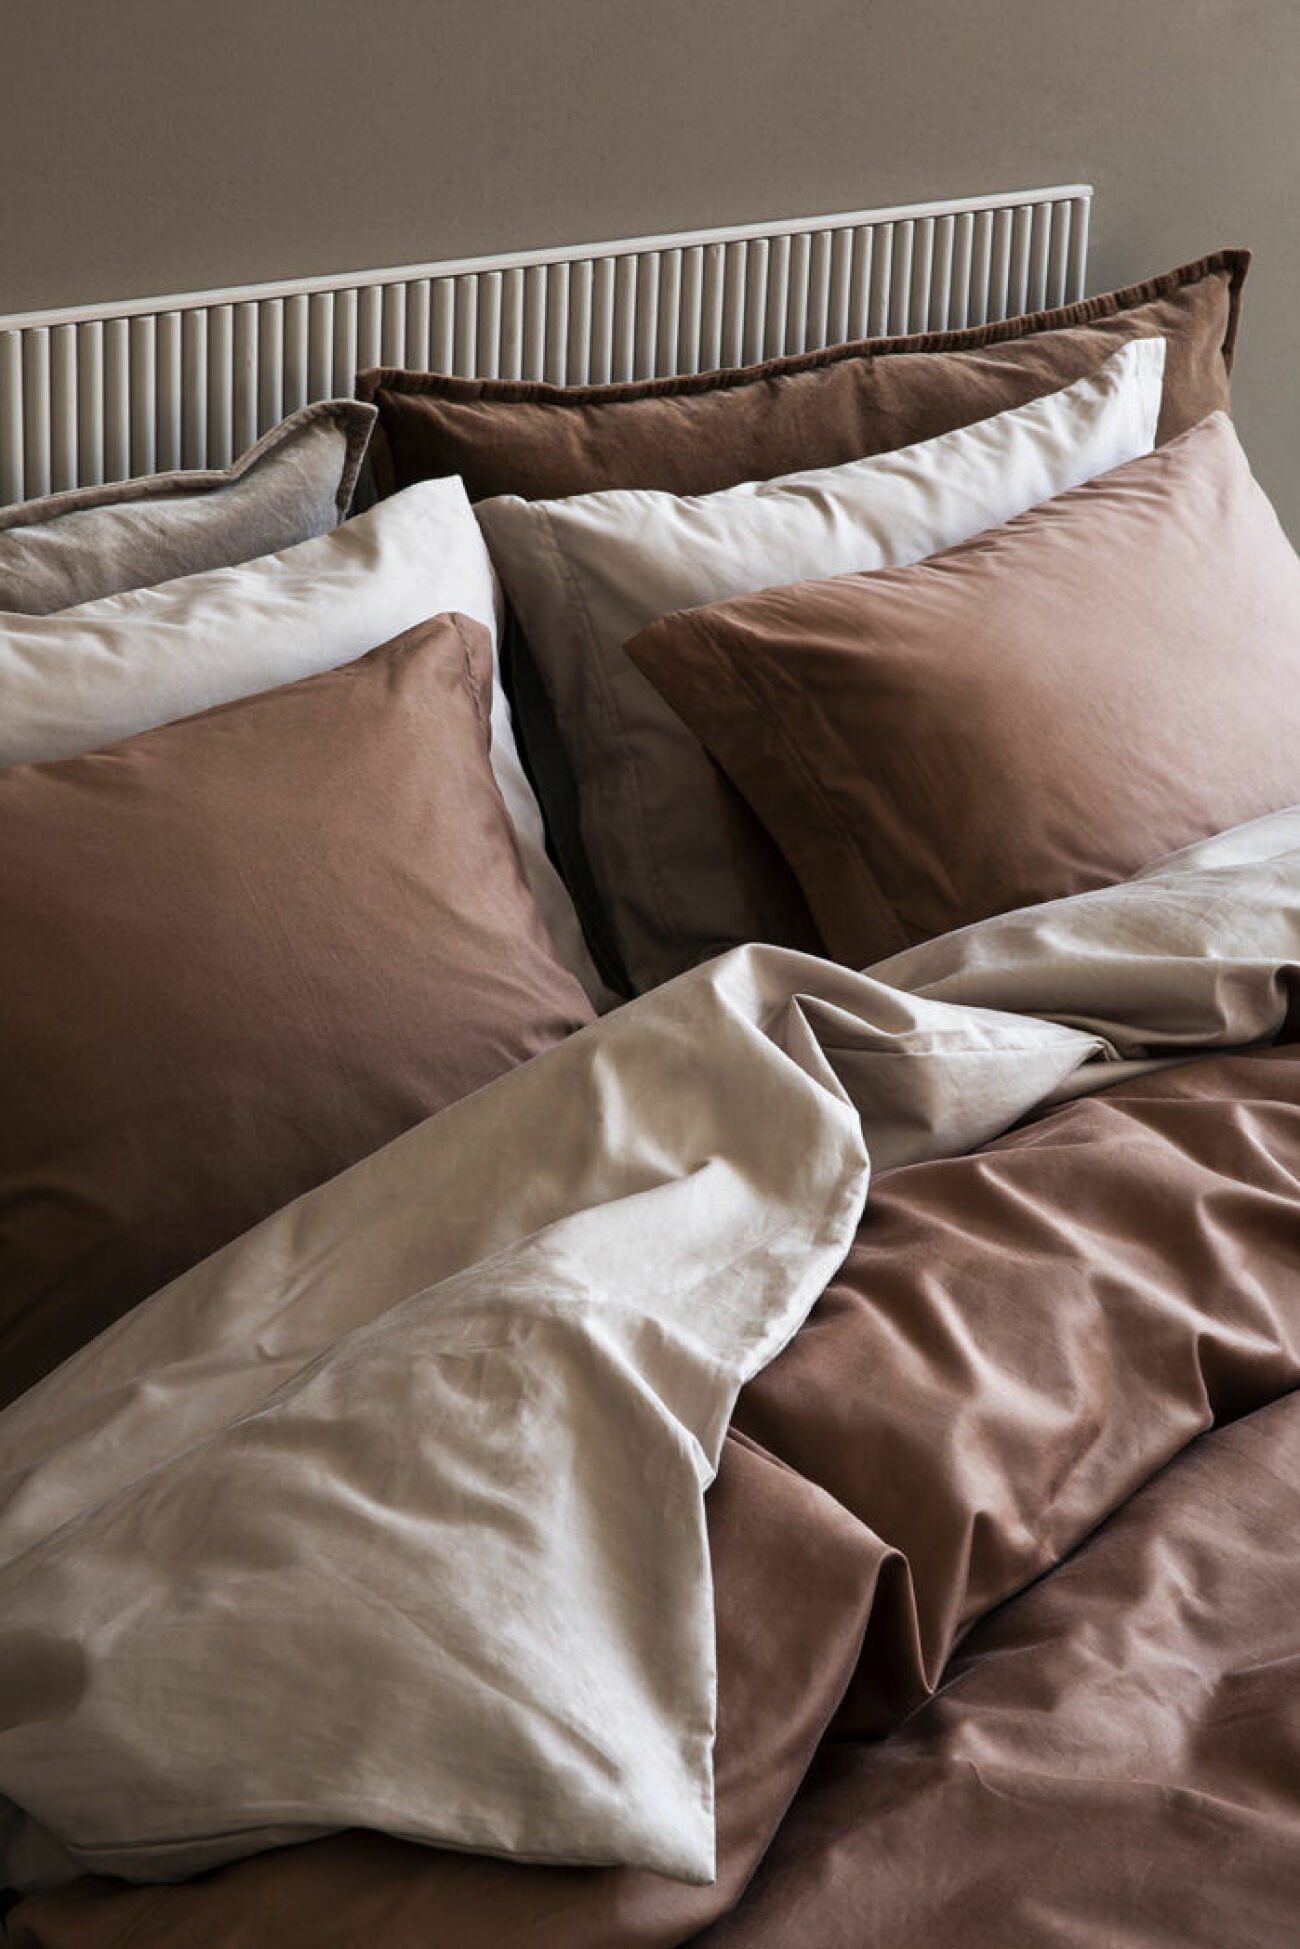 GRanit Muted tones är en kollektion med bland annat sängkläder ii premiumkvalitet